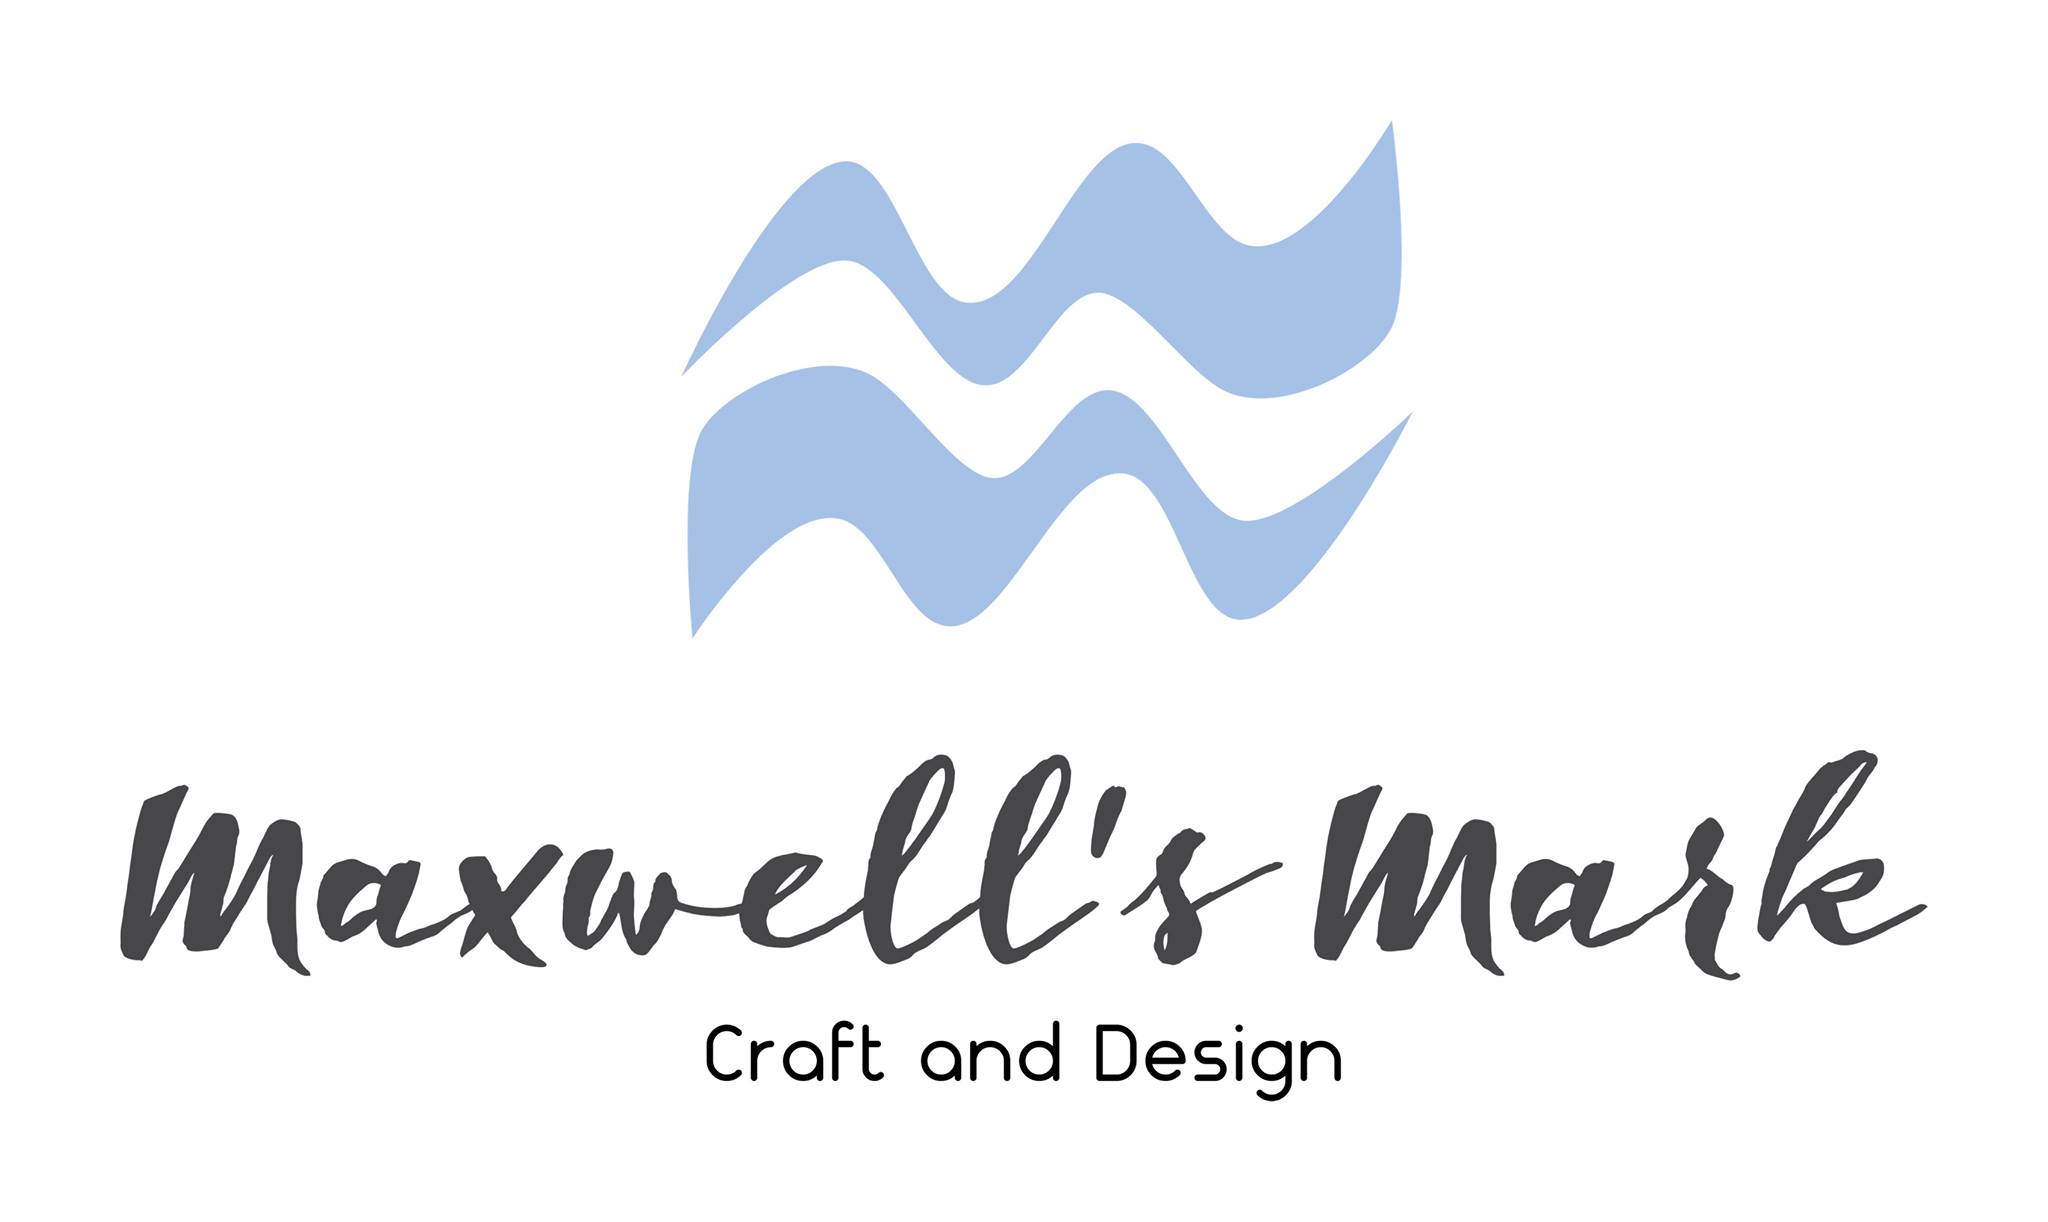 Maxwell's Mark